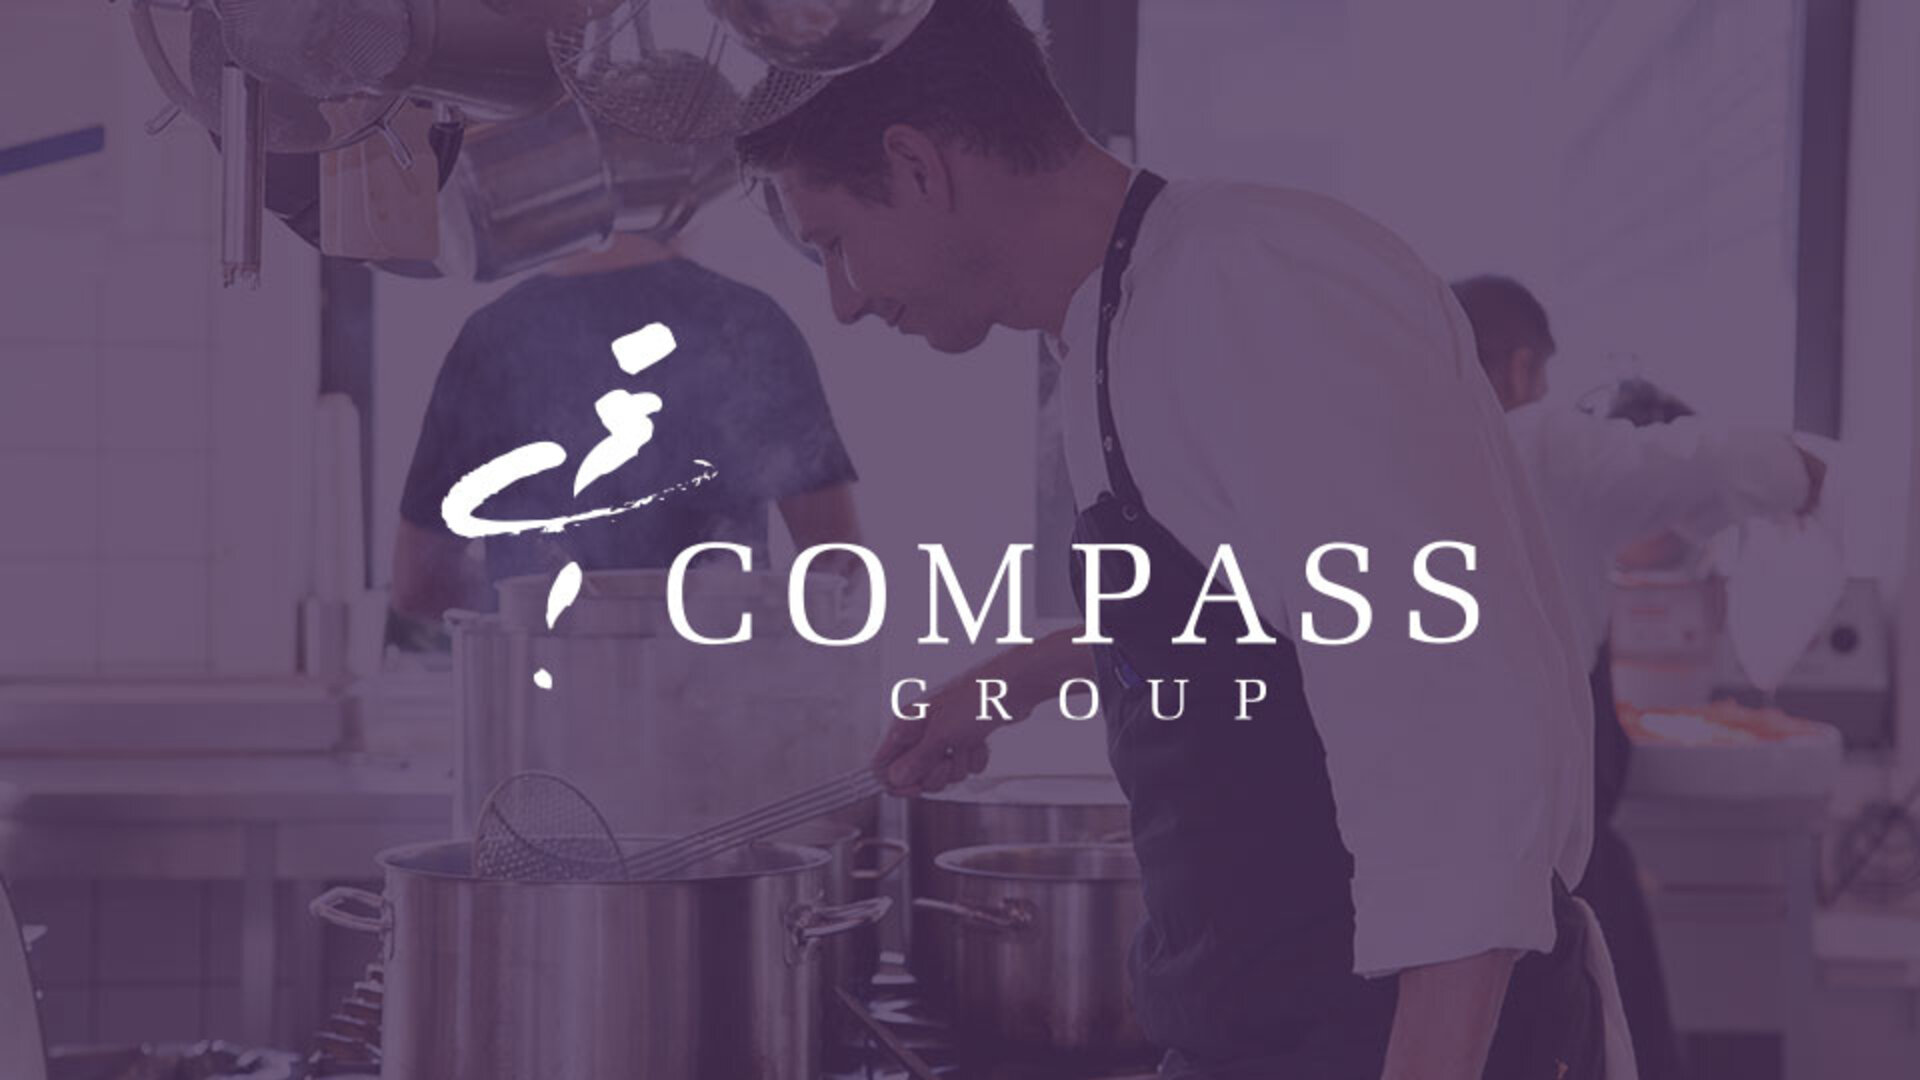 Compass group sikrer online salg på tværs af landegrænser